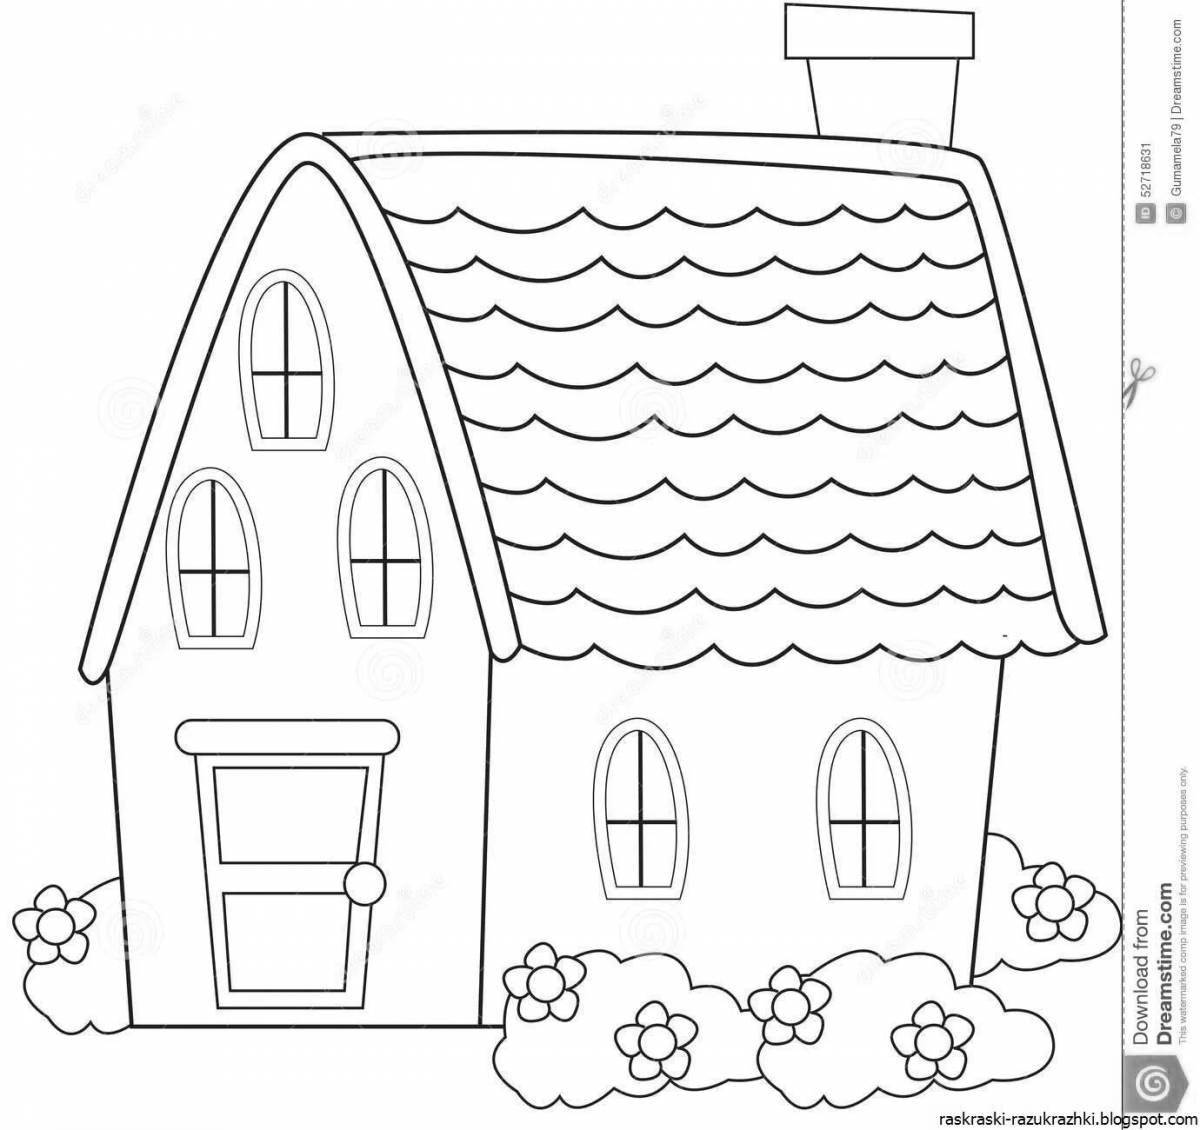 Раскраска веселый домик для детей 4-5 лет